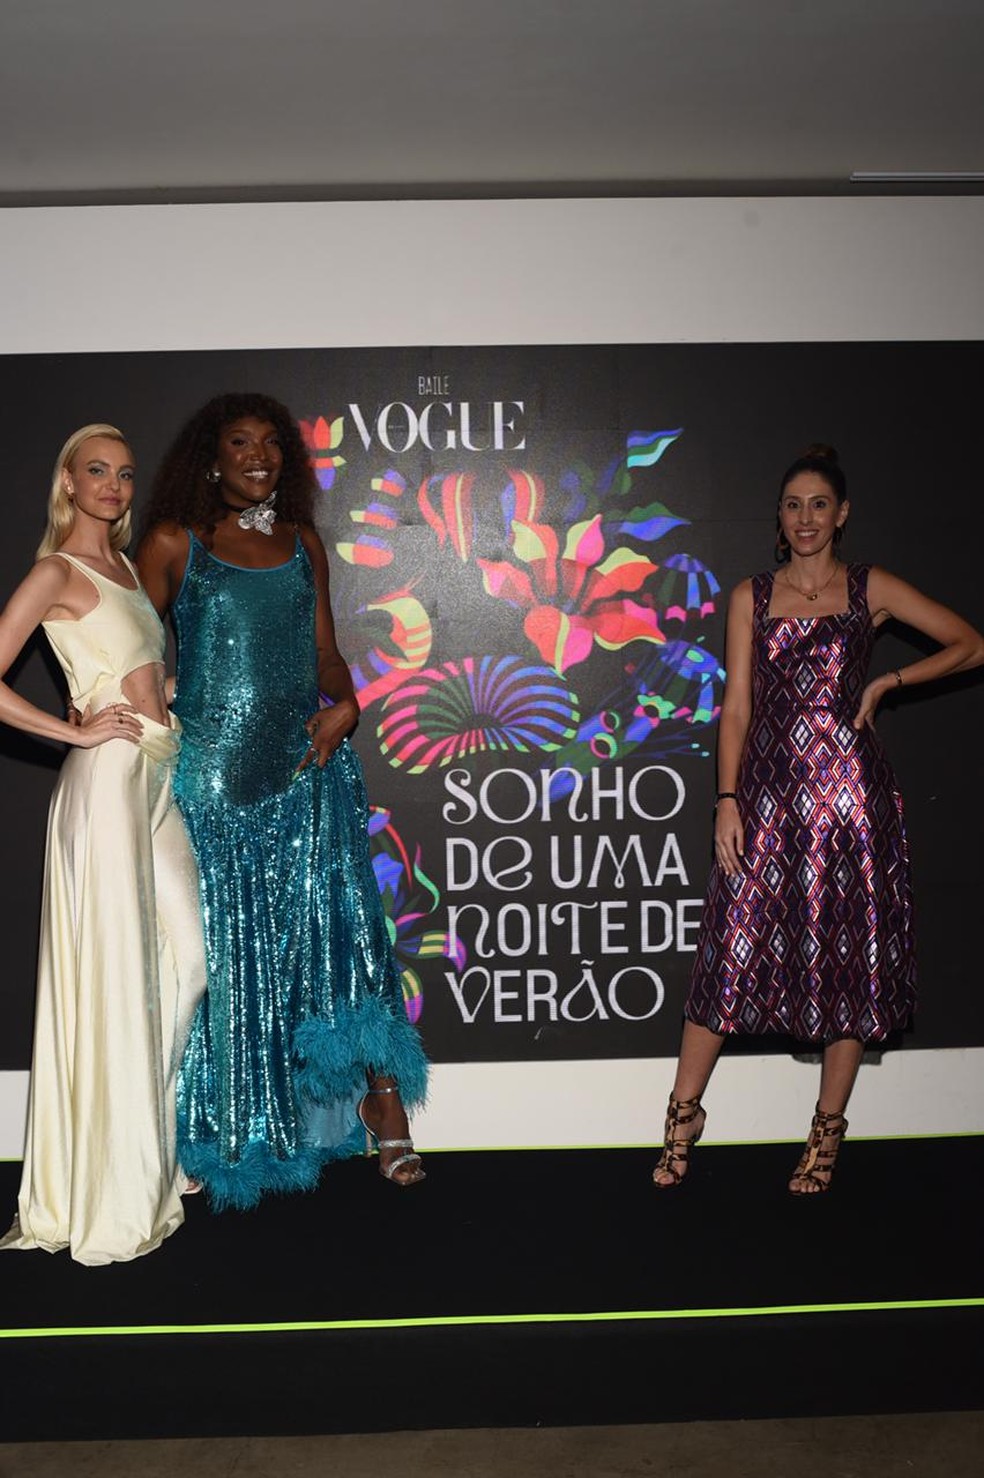 Baile da Vogue 2023: tudo sobre a festa de gala mais fashionista, Baile da  Vogue